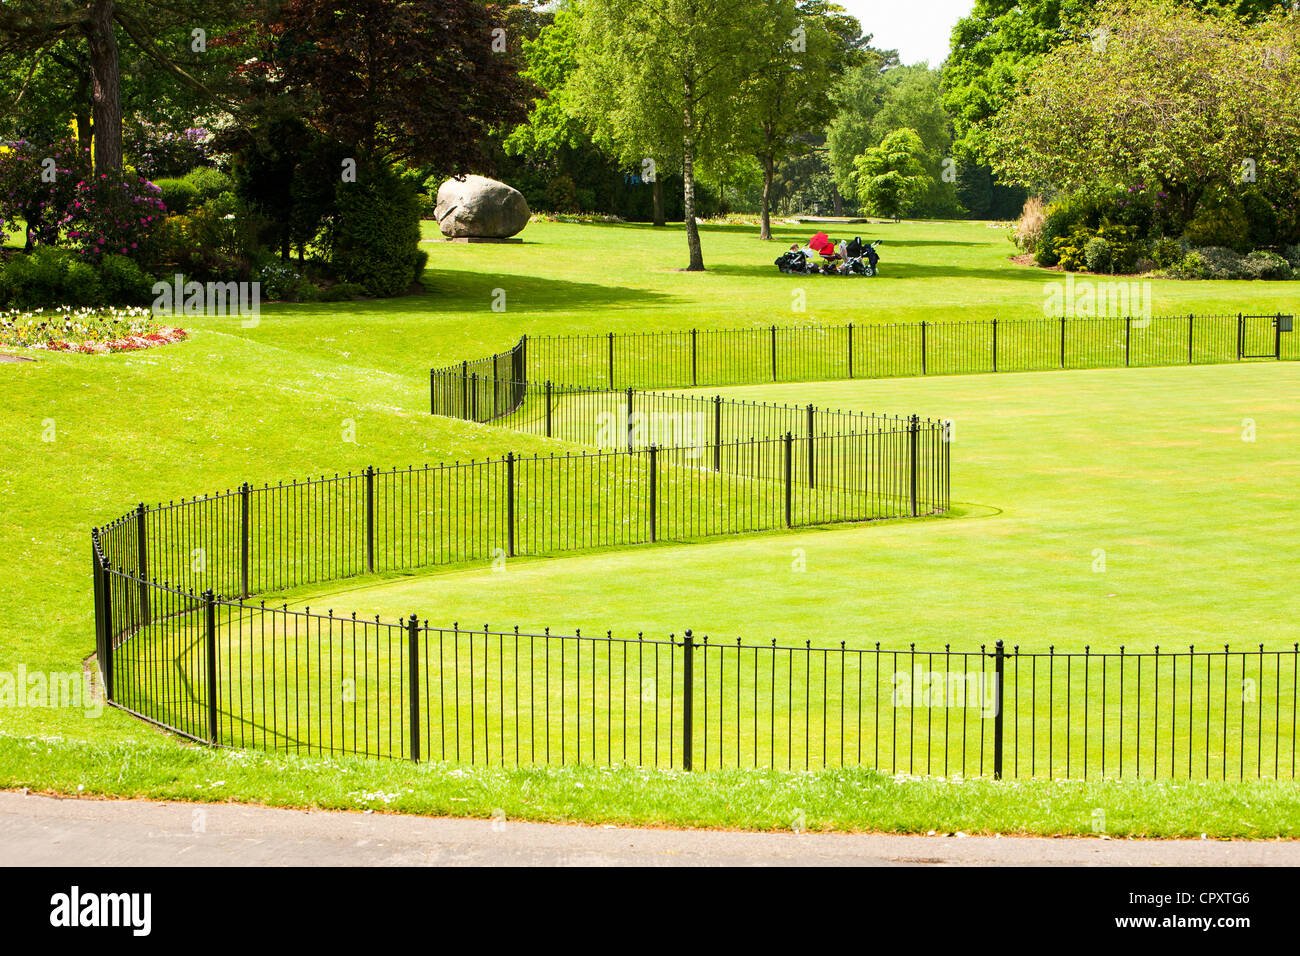 La couronne de boules vertes dans le West Park, Macclesfield, Cheshire, Royaume-Uni. Banque D'Images